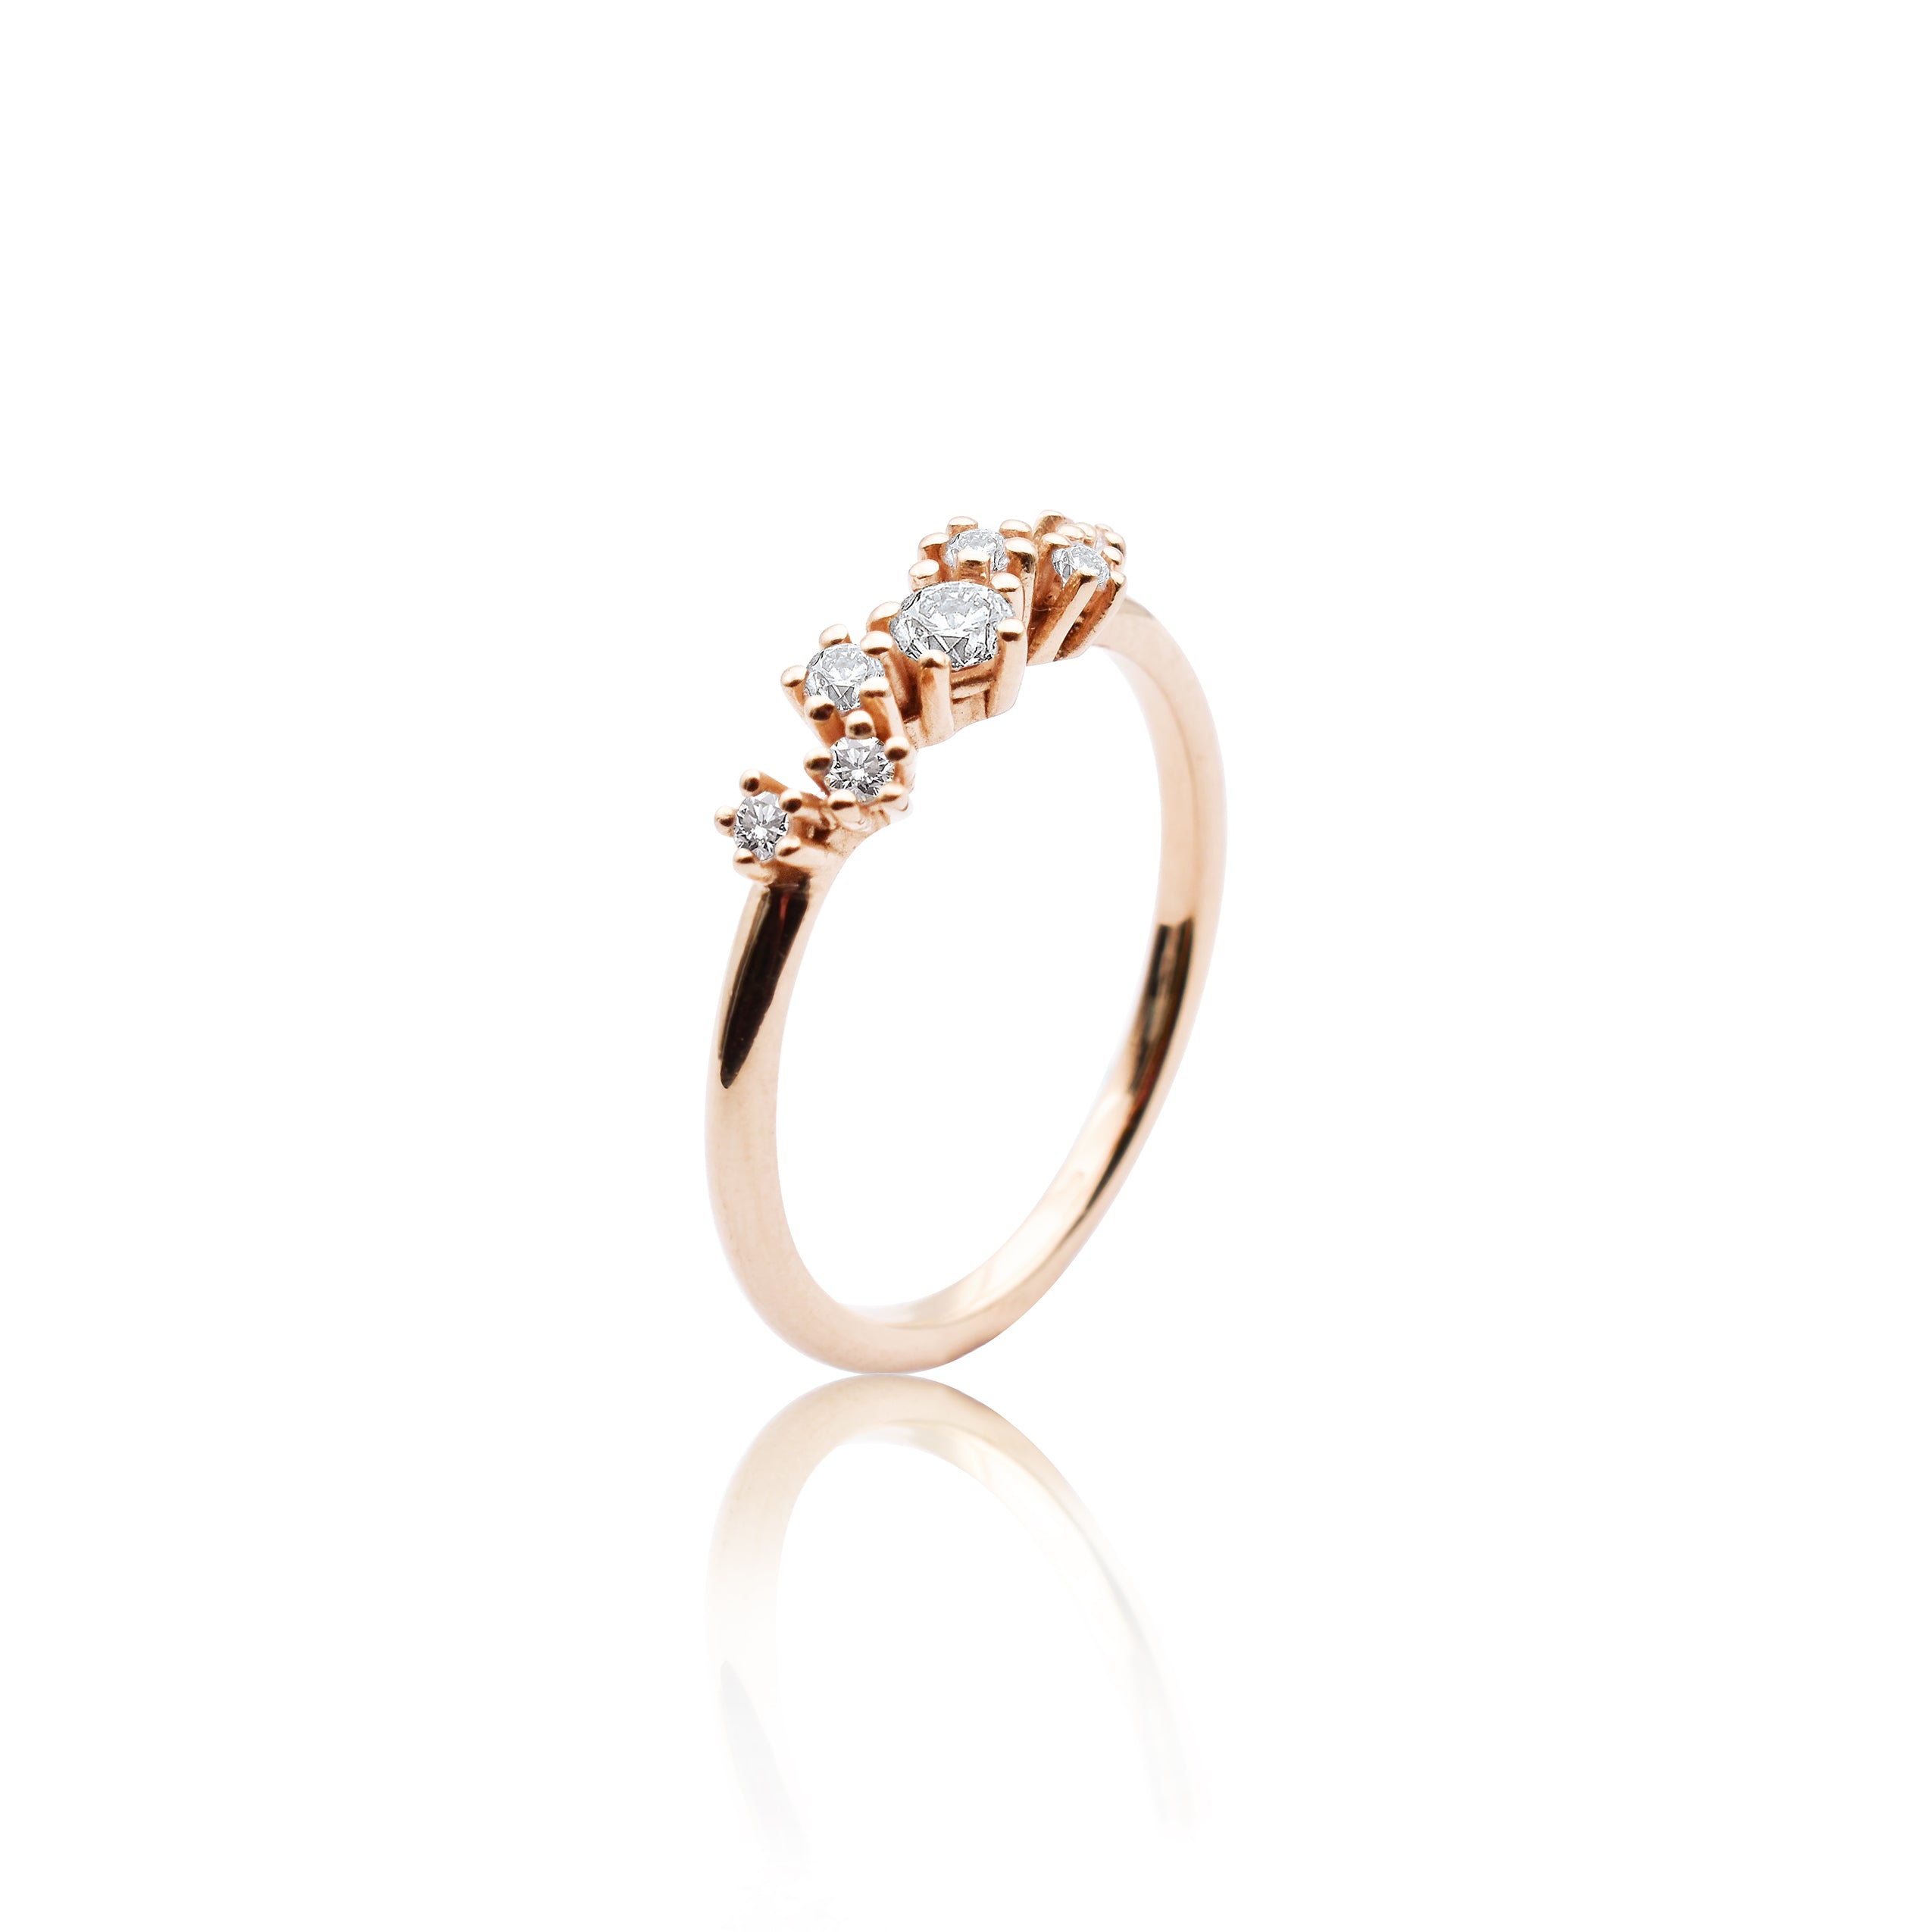 Fonkelende ring "groot" in 585/- goud met 7 diamanten